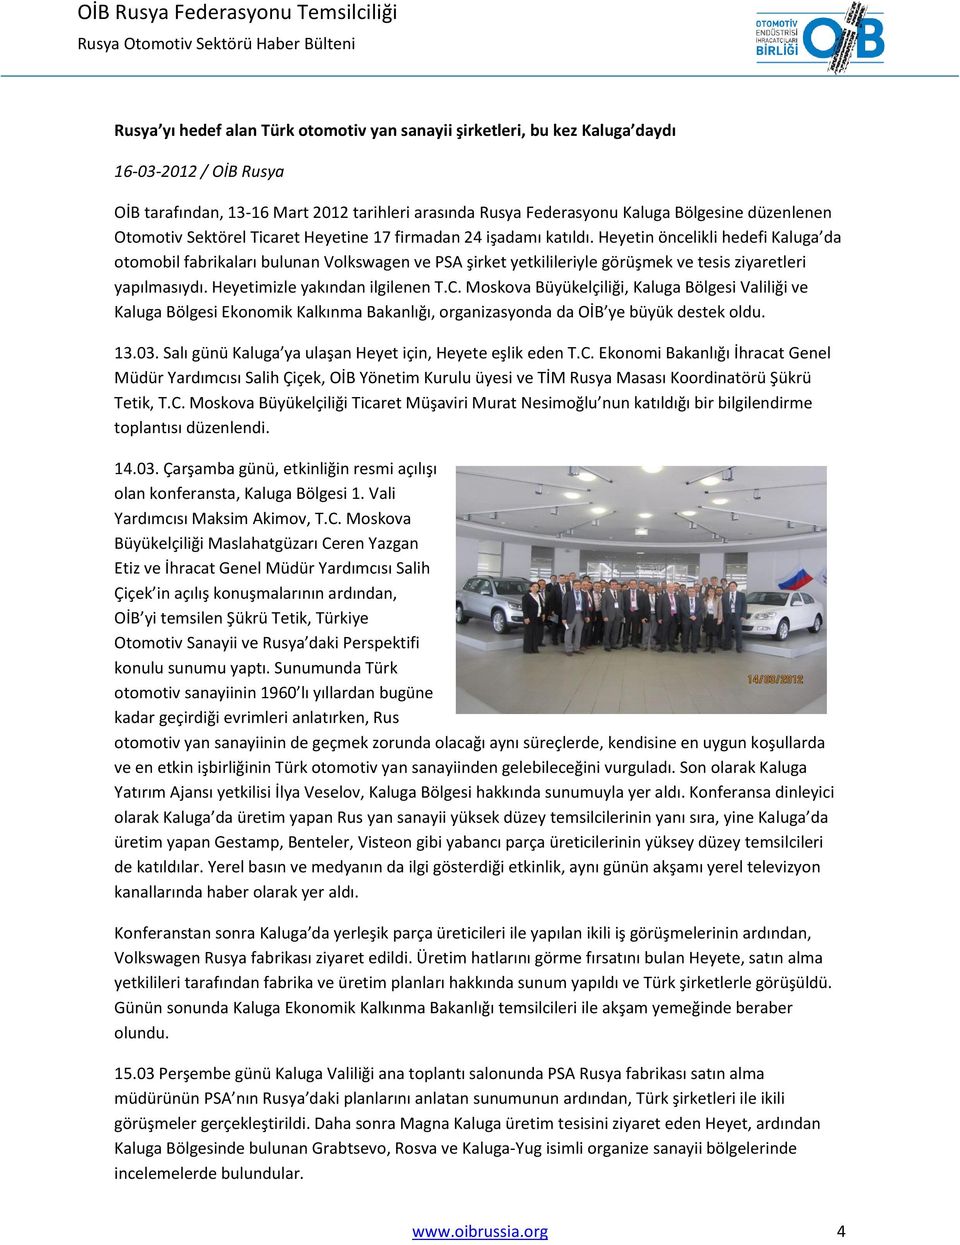 Heyetin öncelikli hedefi Kaluga da otomobil fabrikaları bulunan Volkswagen ve PSA şirket yetkilileriyle görüşmek ve tesis ziyaretleri yapılmasıydı. Heyetimizle yakından ilgilenen T.C.